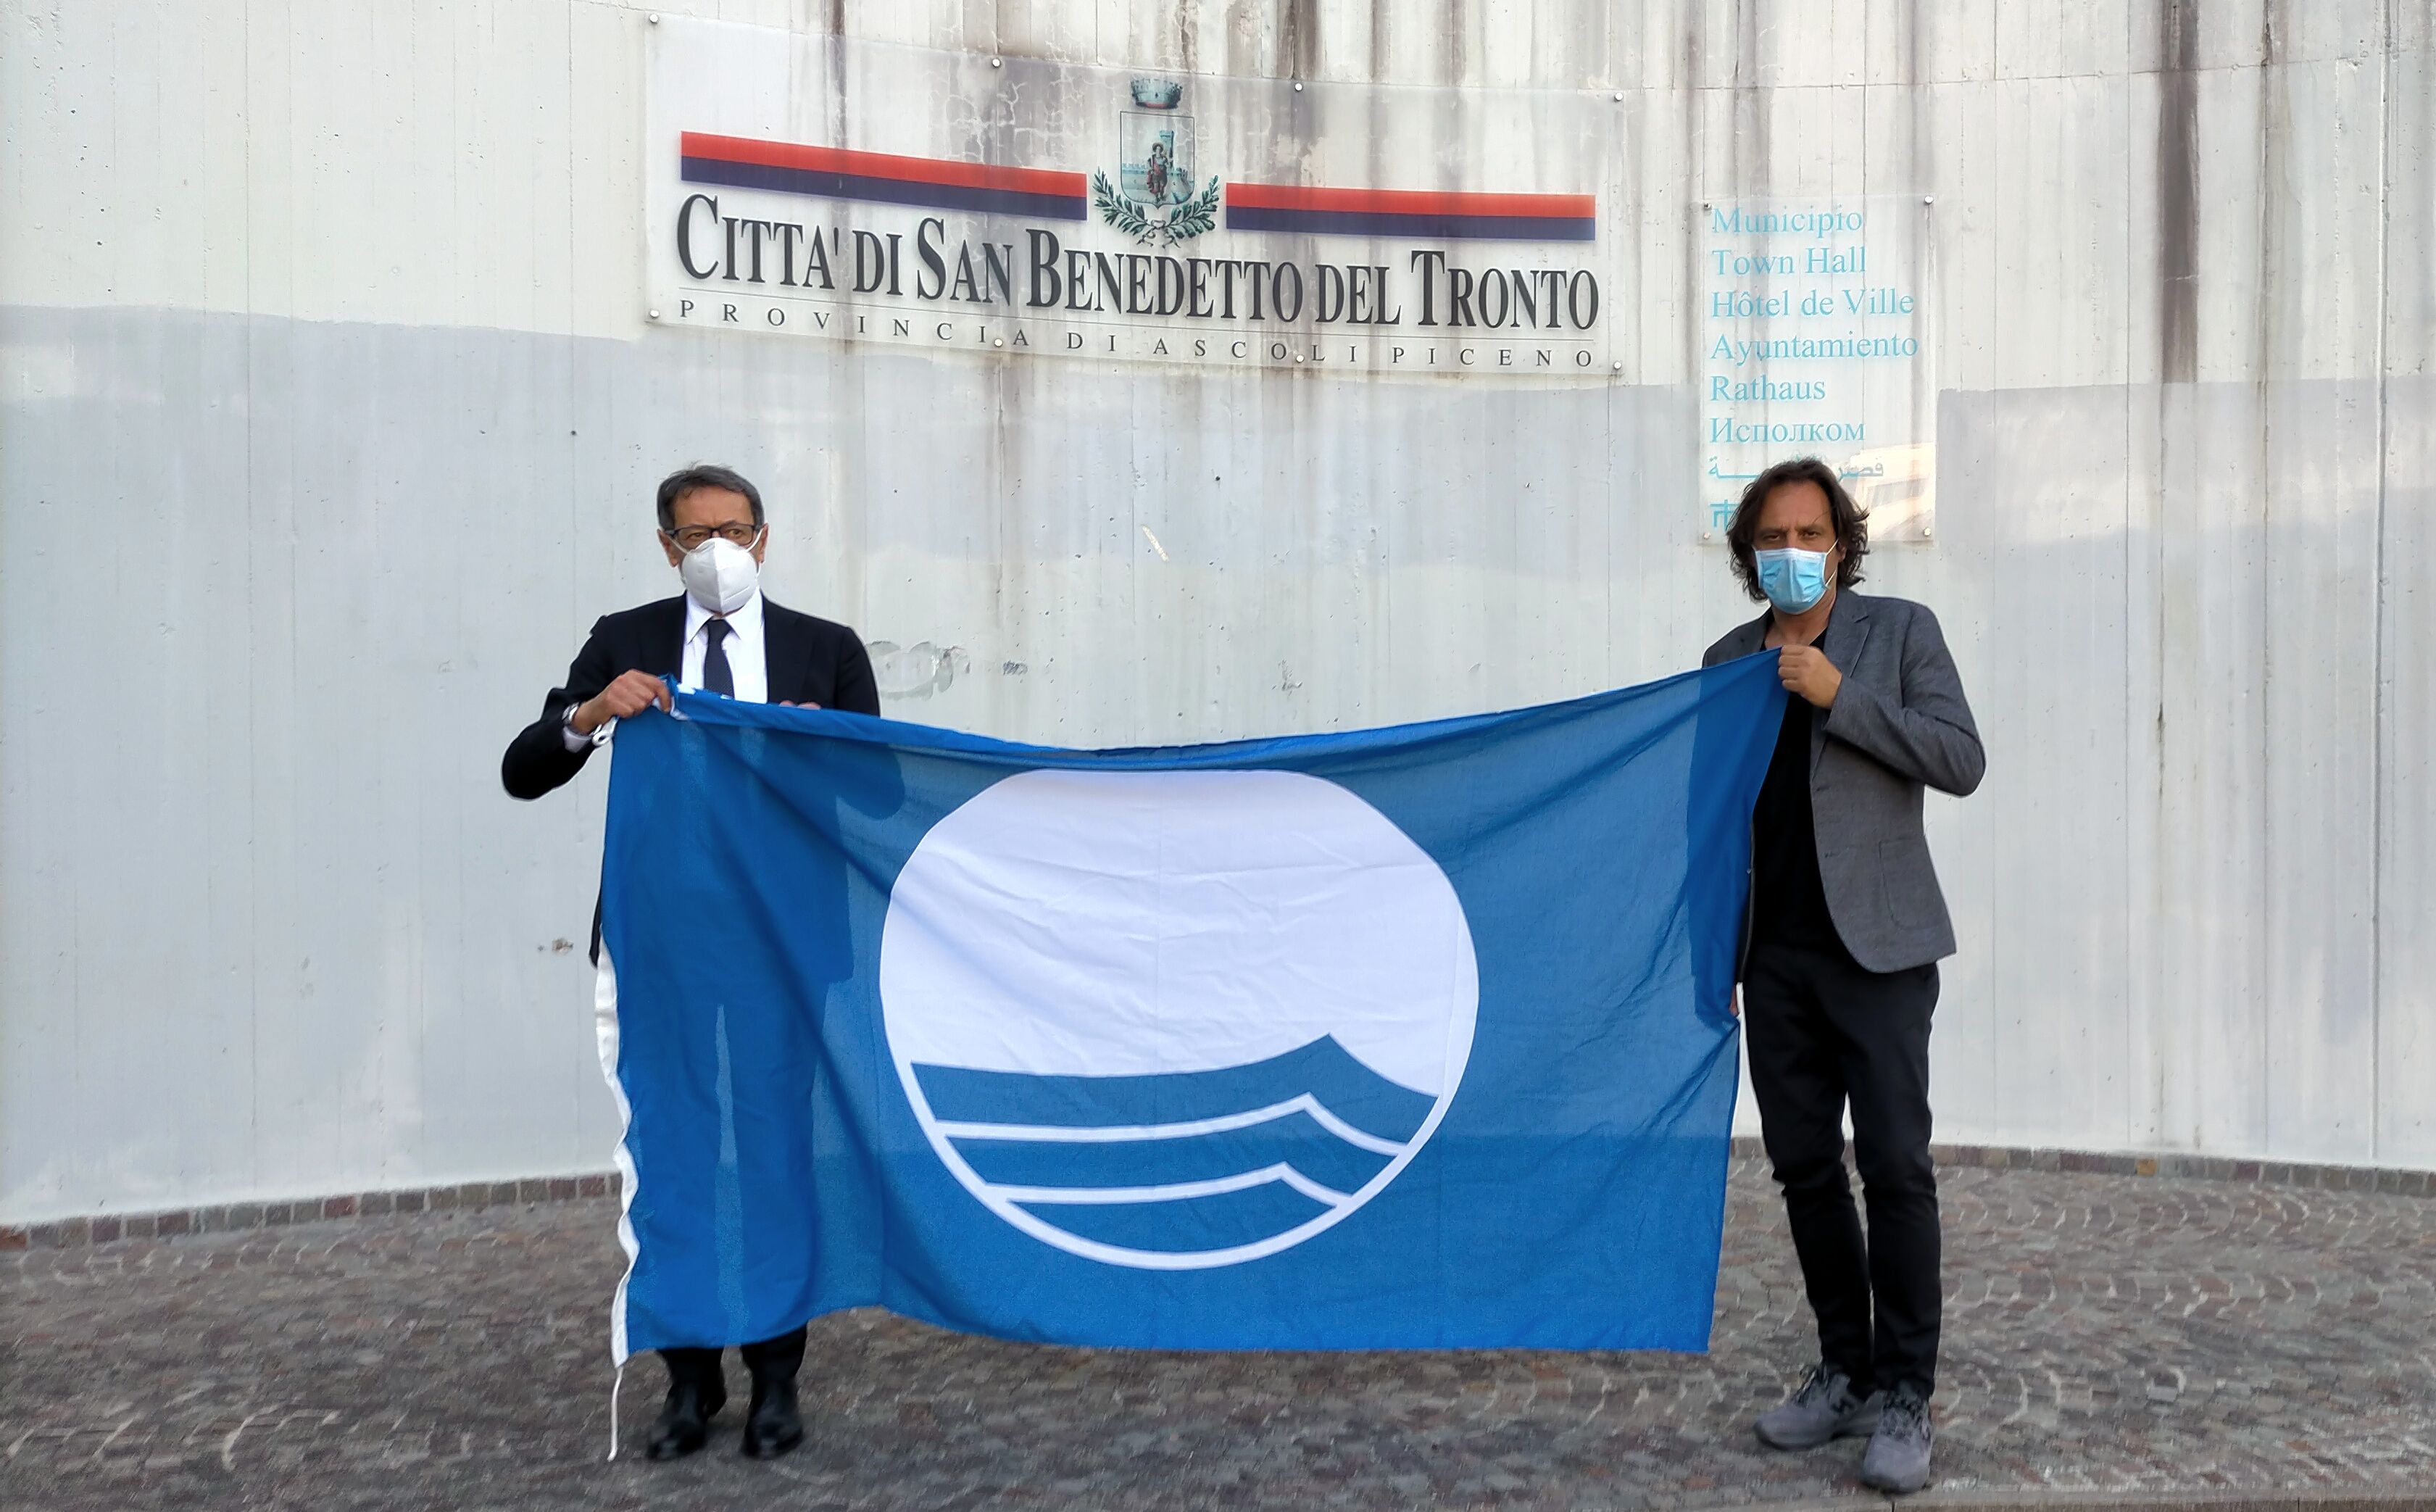 La Bandiera Blu sventolerà anche nel 2021 su San Benedetto del Tronto